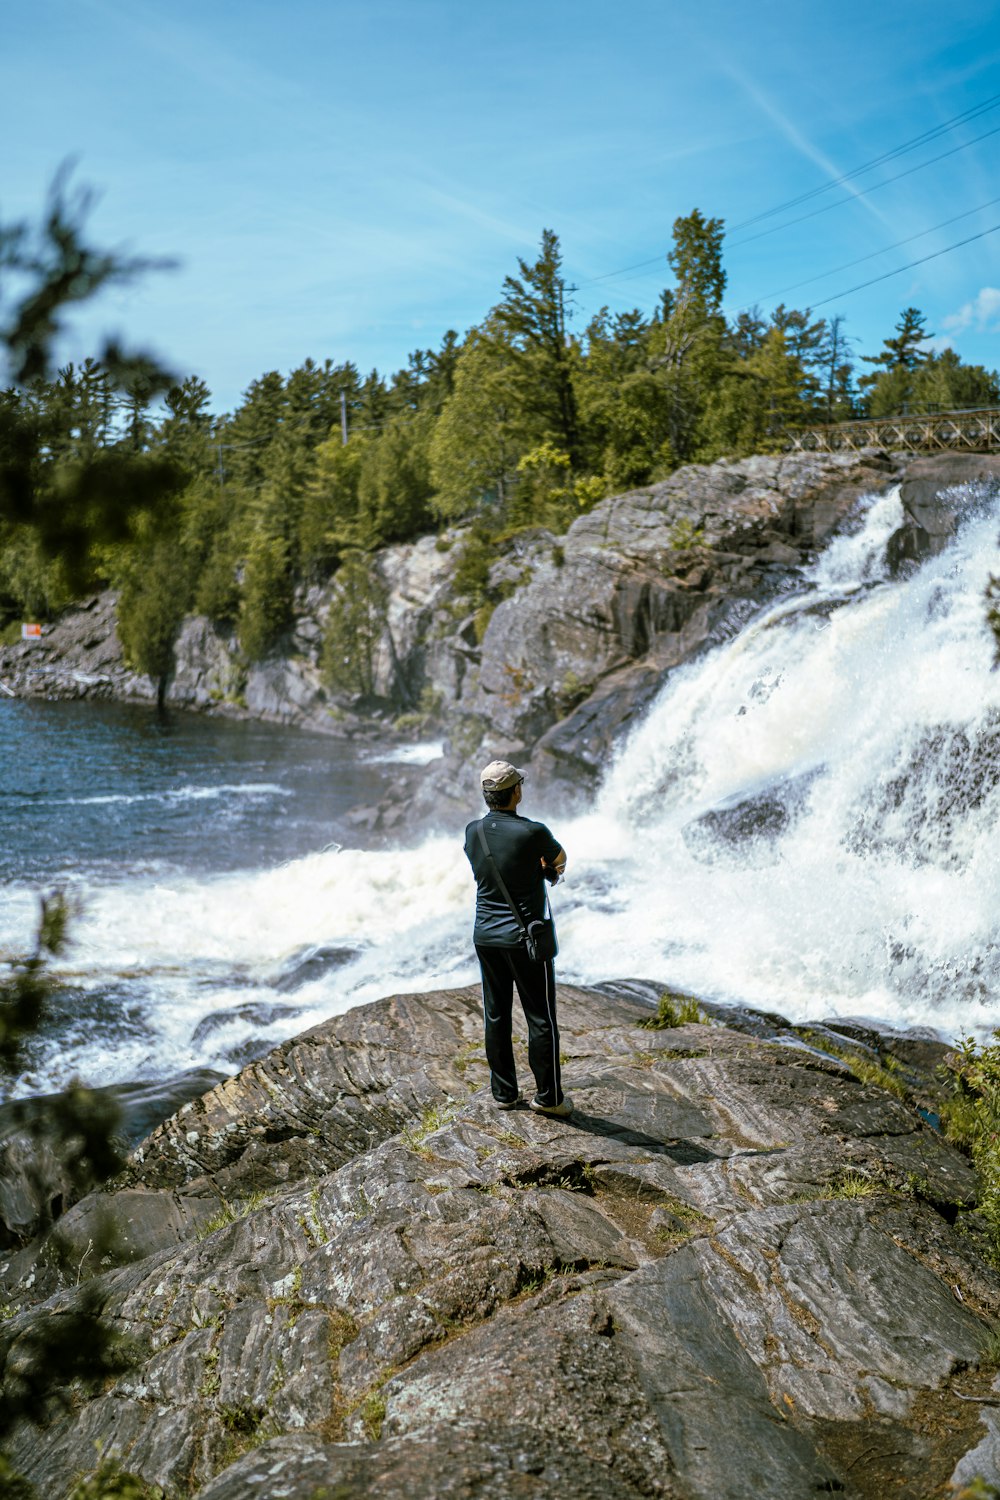 Una persona in piedi su una roccia che guarda una cascata